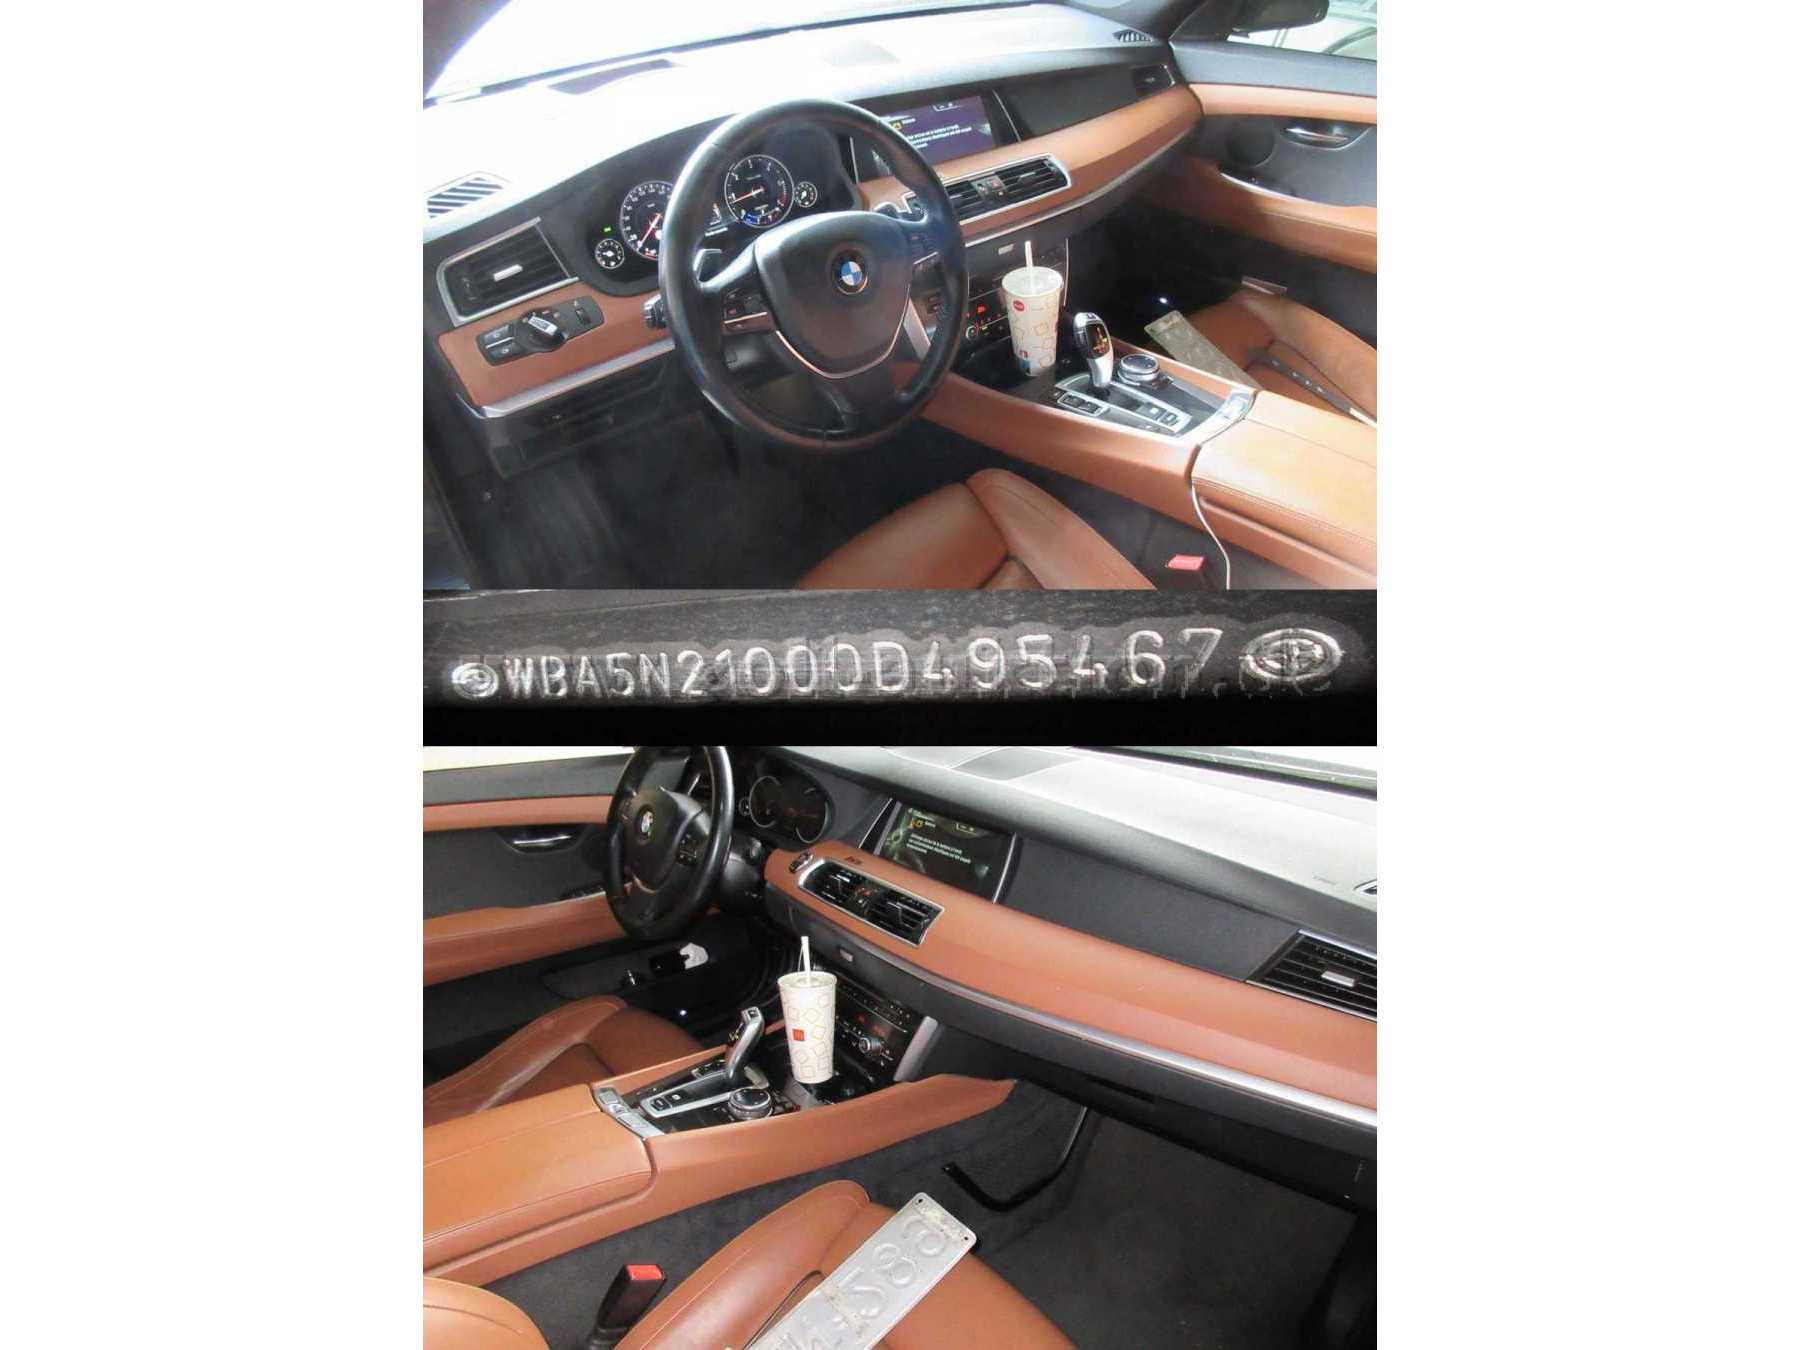 BMW 520D GT - Armaturen und Fahrgestellnummer